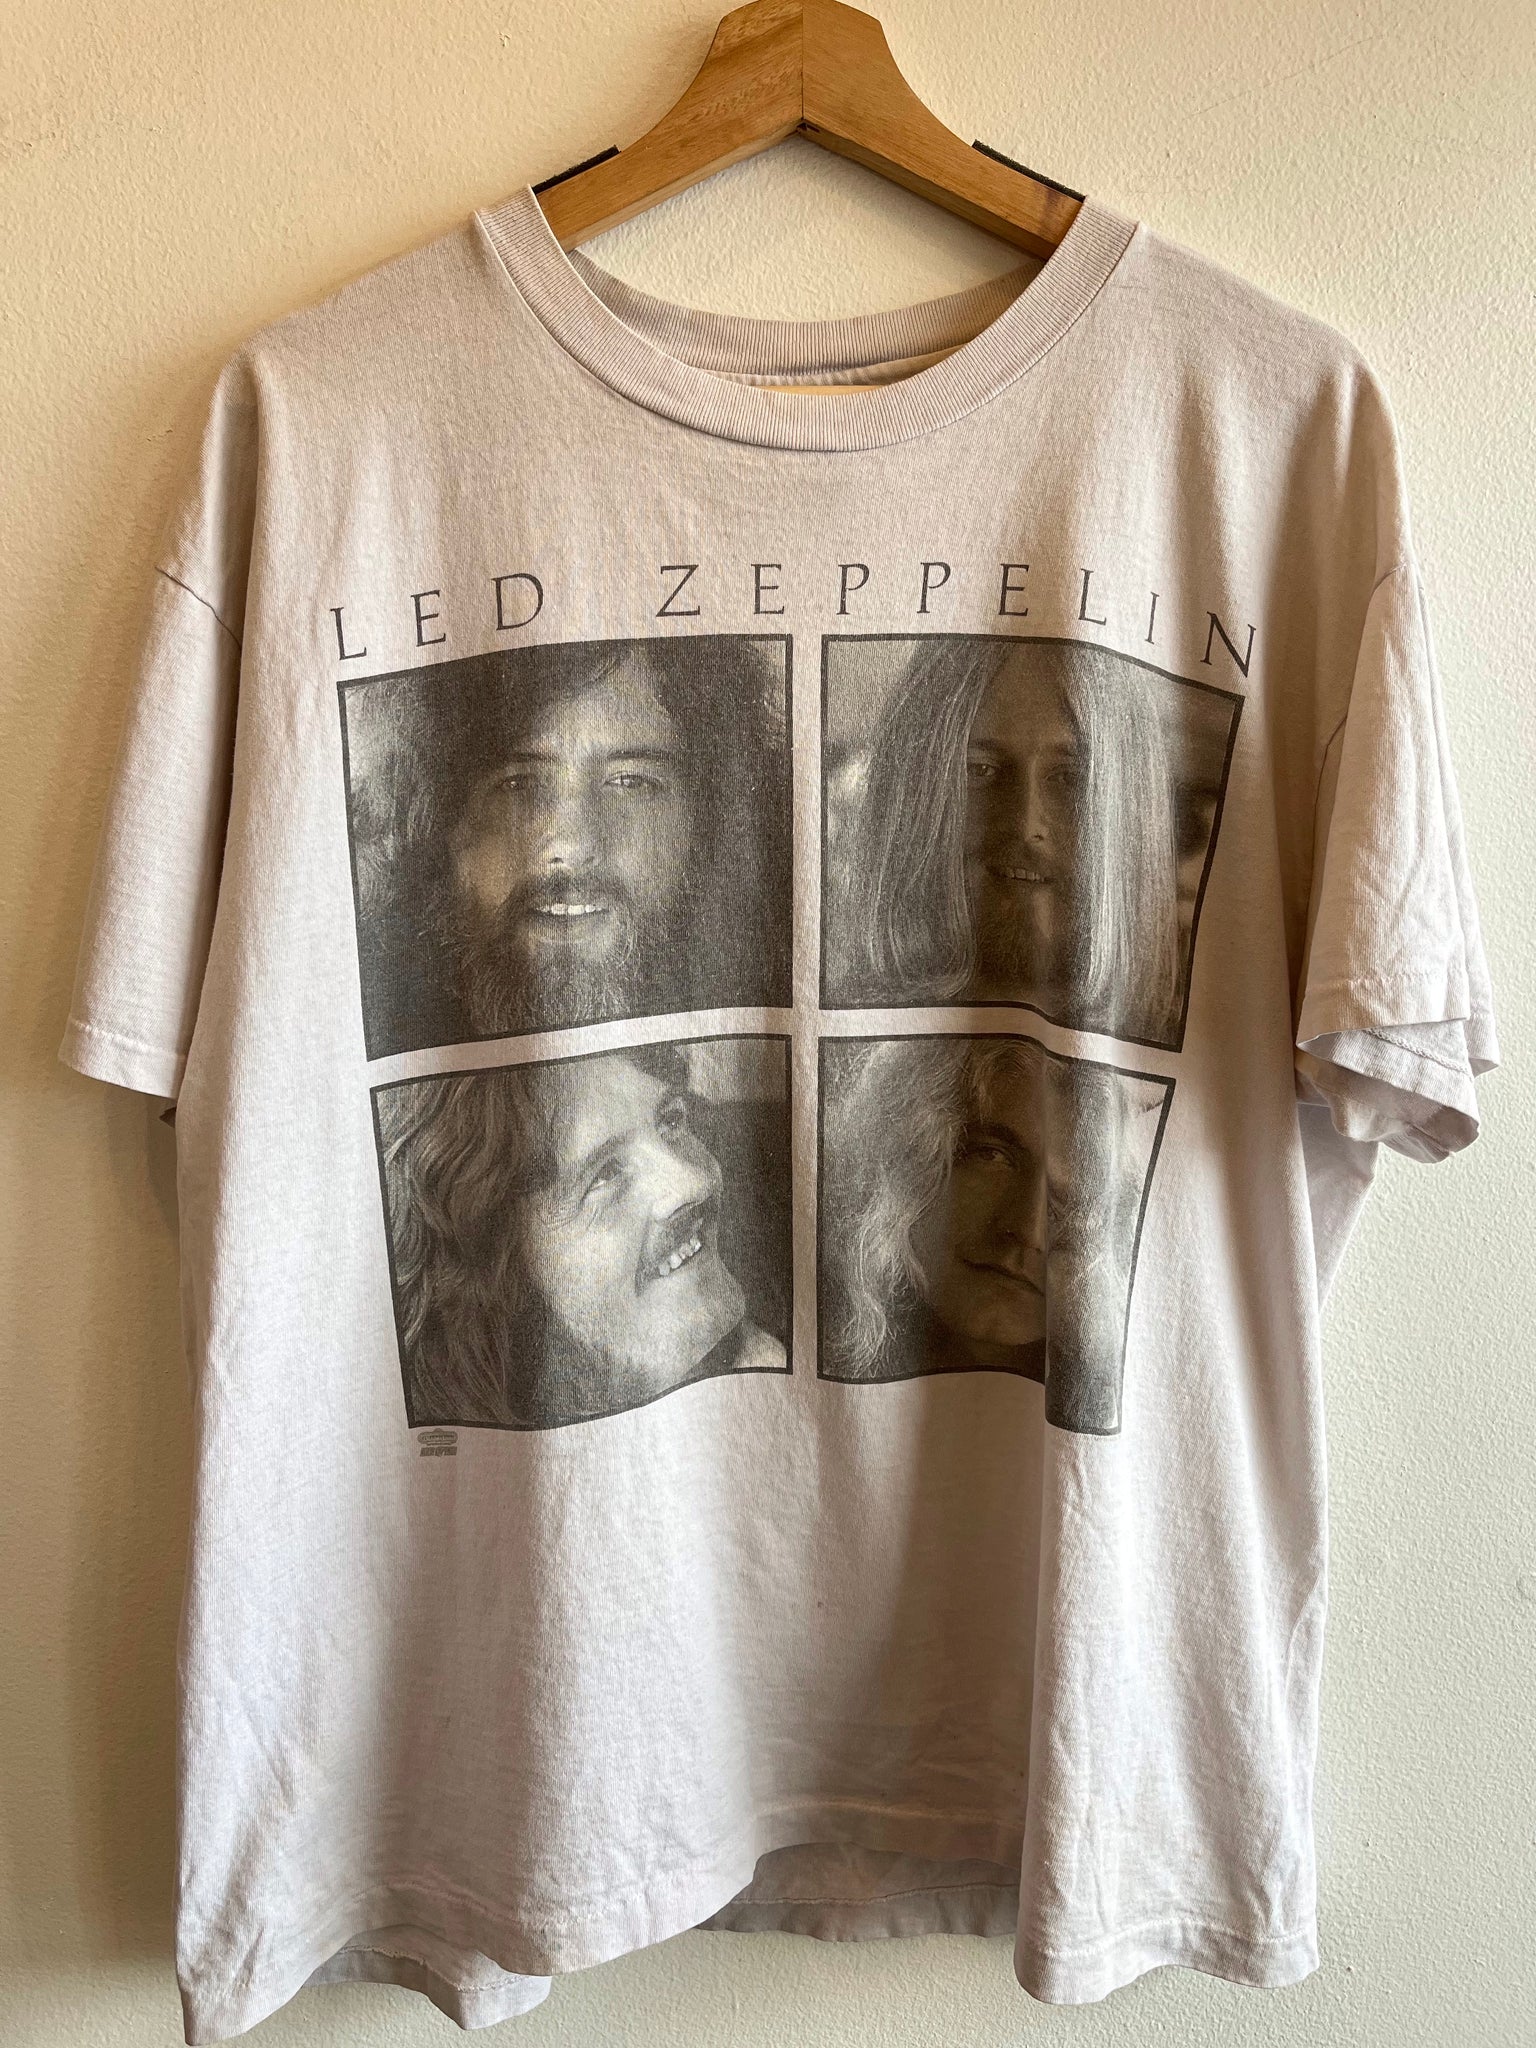 Vintage 1993 Led Zeppelin T-Shirt